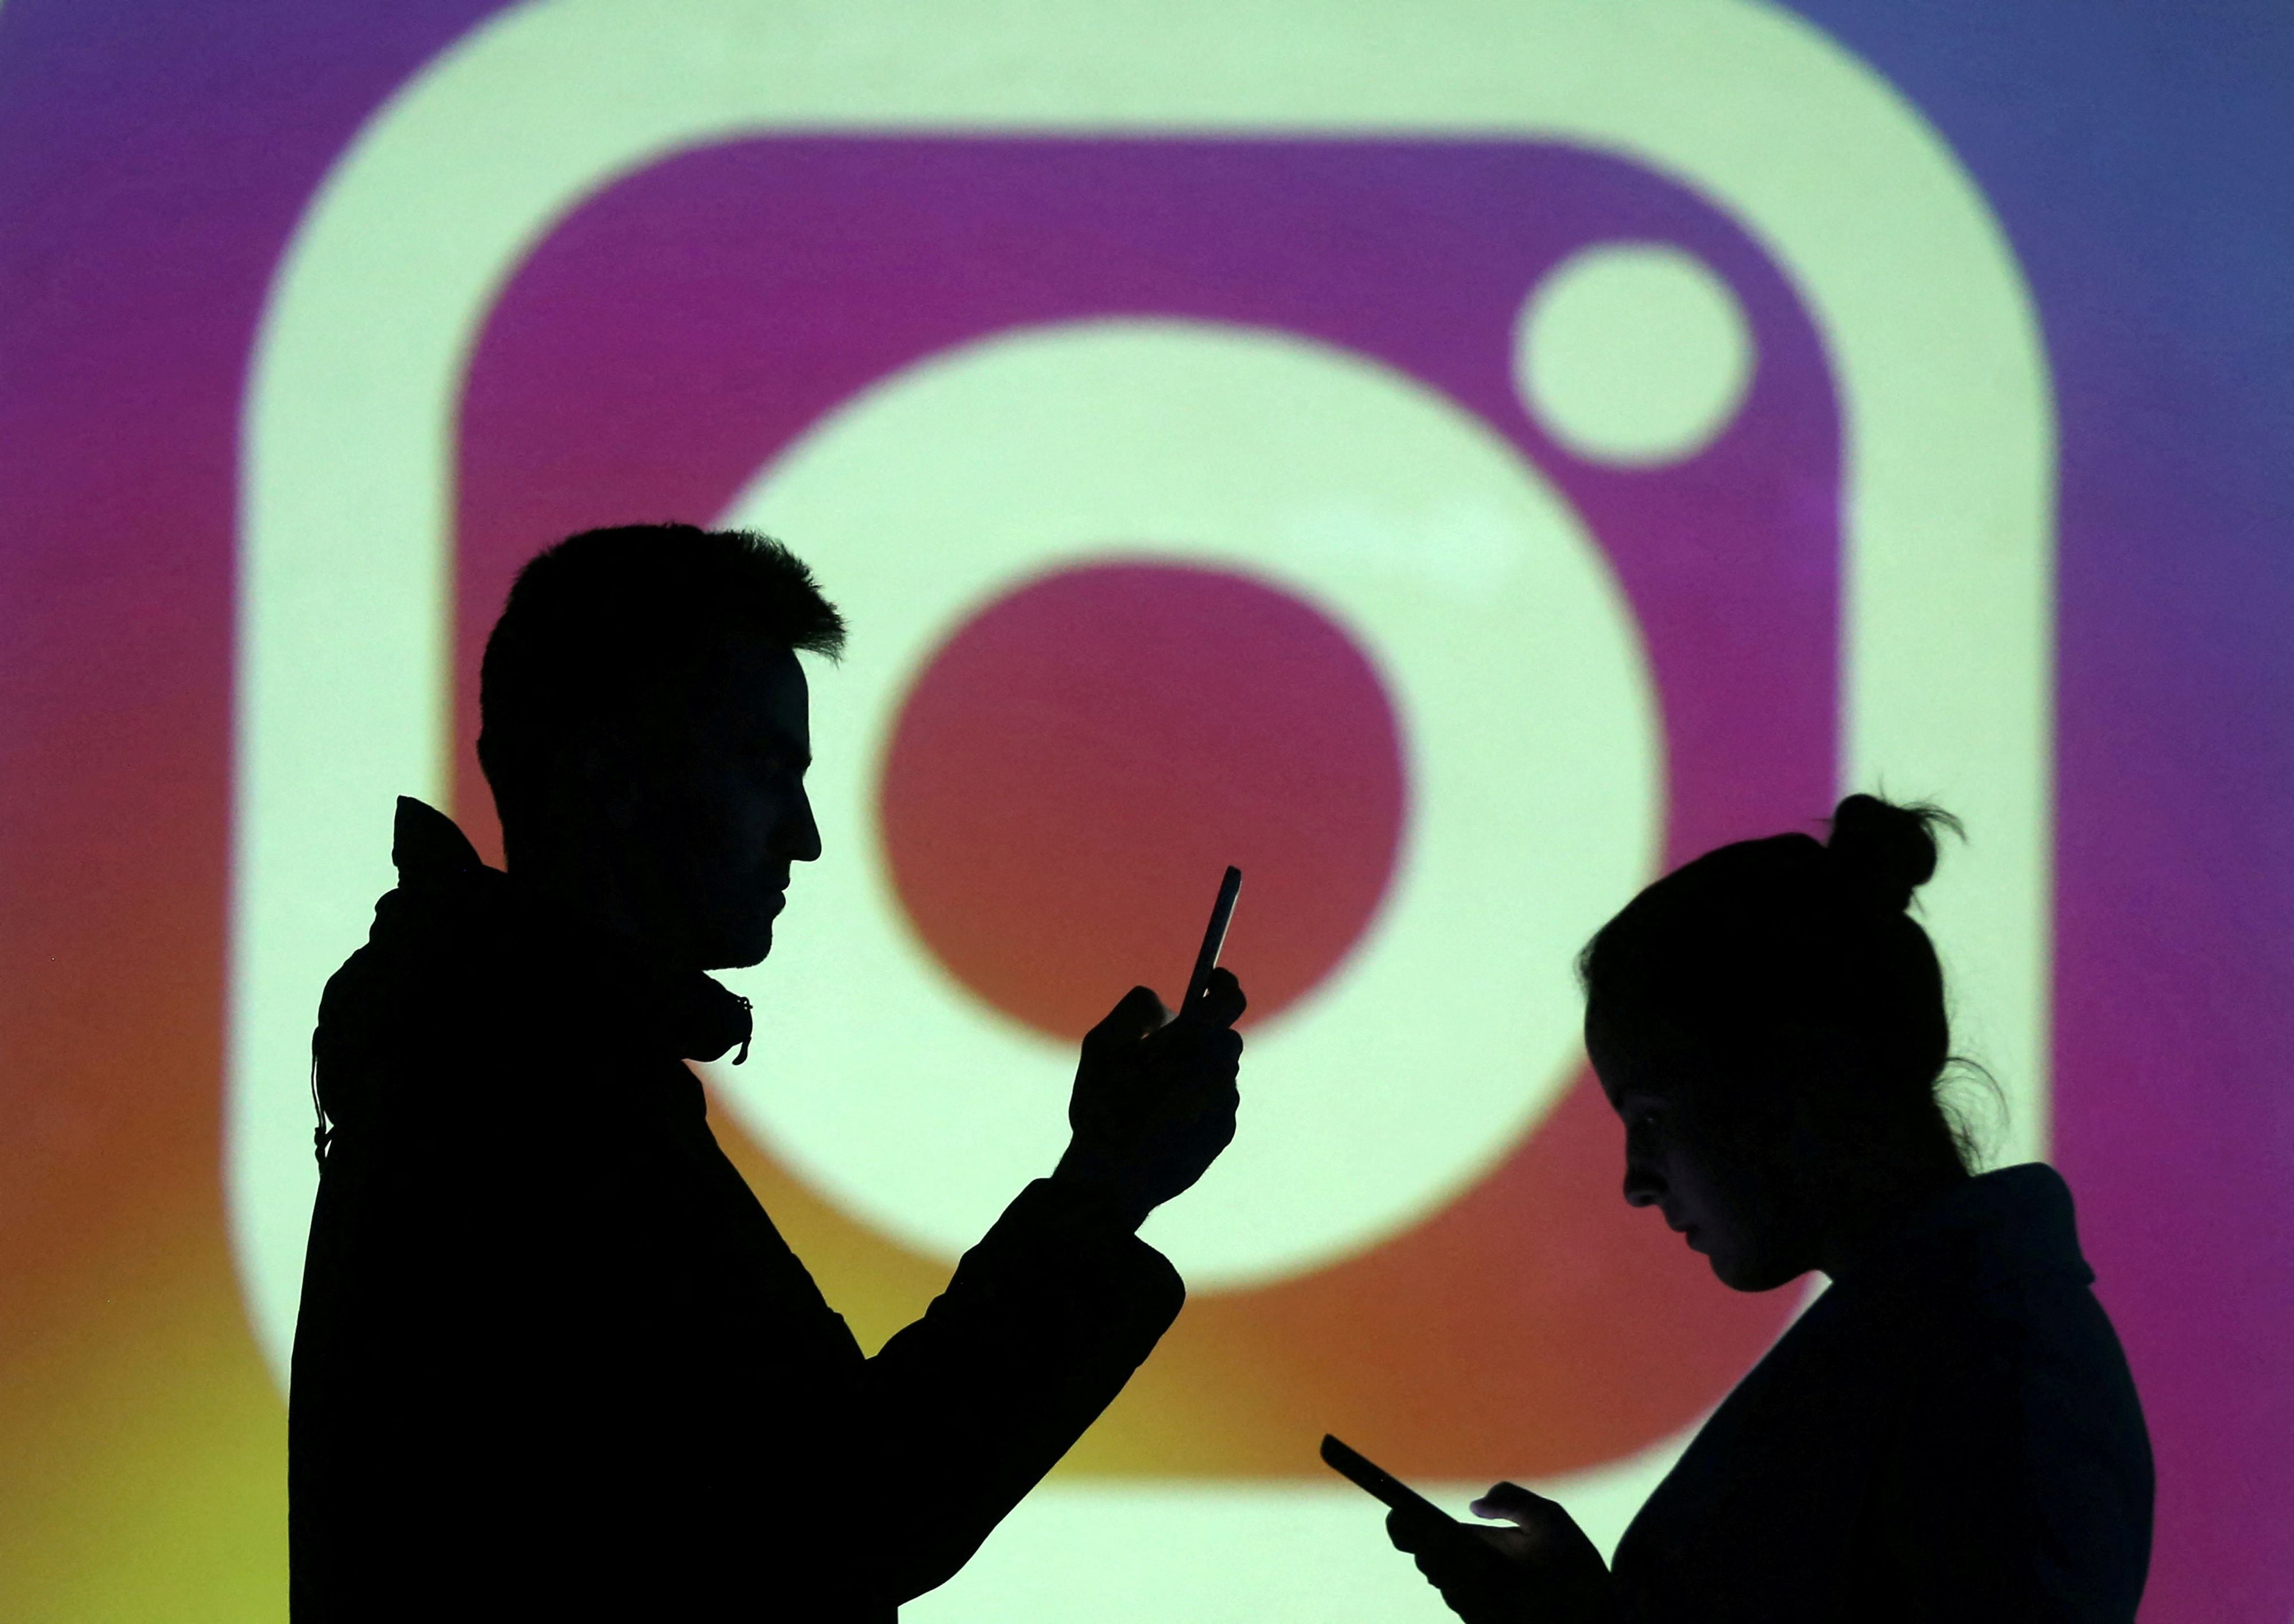 La práctica de divulgar detalles personales en plataformas de alto tráfico como Instagram ha generado alarmas entre los expetos de ciberseguridad. (REUTERS/Dado Ruvic)